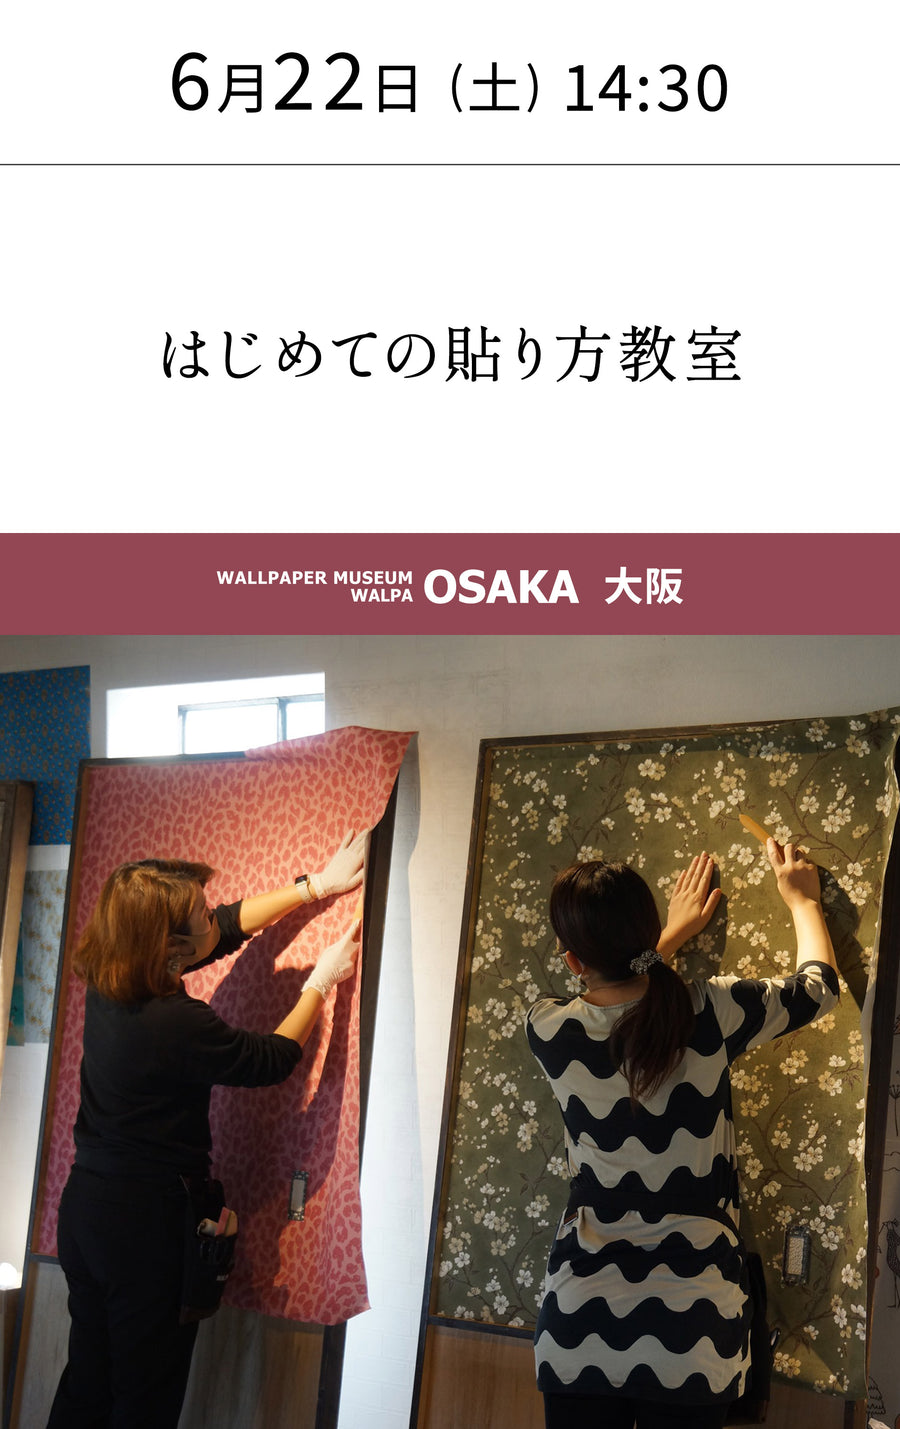 6月22日(土) 14:30～WALLPAPER MUSEUM WALPA / OSAKA ワークショップ 「はじめての貼り方教室」